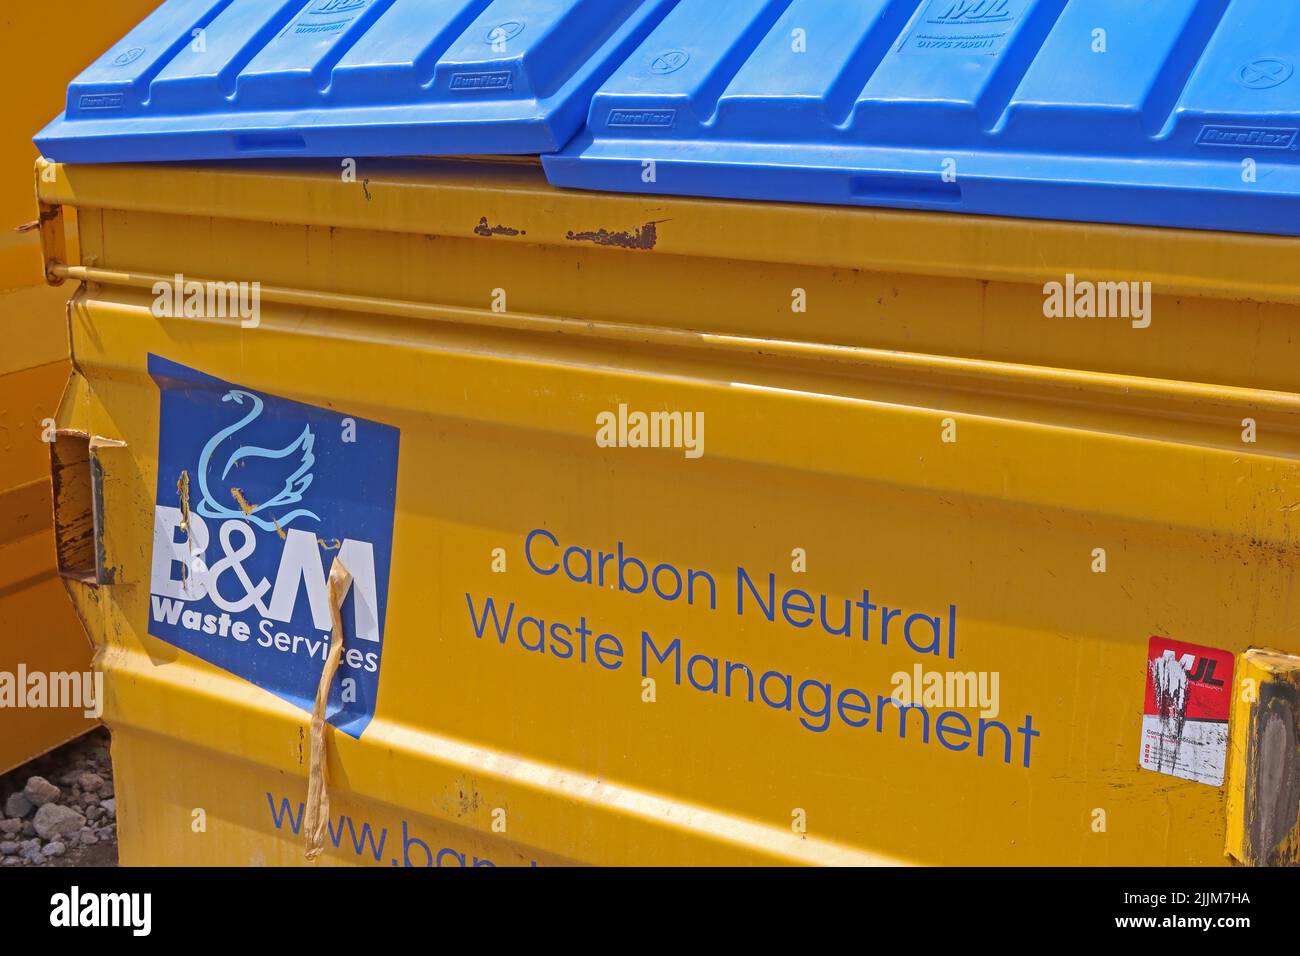 Servizi rifiuti B&M - Carbon Neutral Waste management skip. Le imprese possono realmente essere a zero emissioni di carbonio? Foto Stock